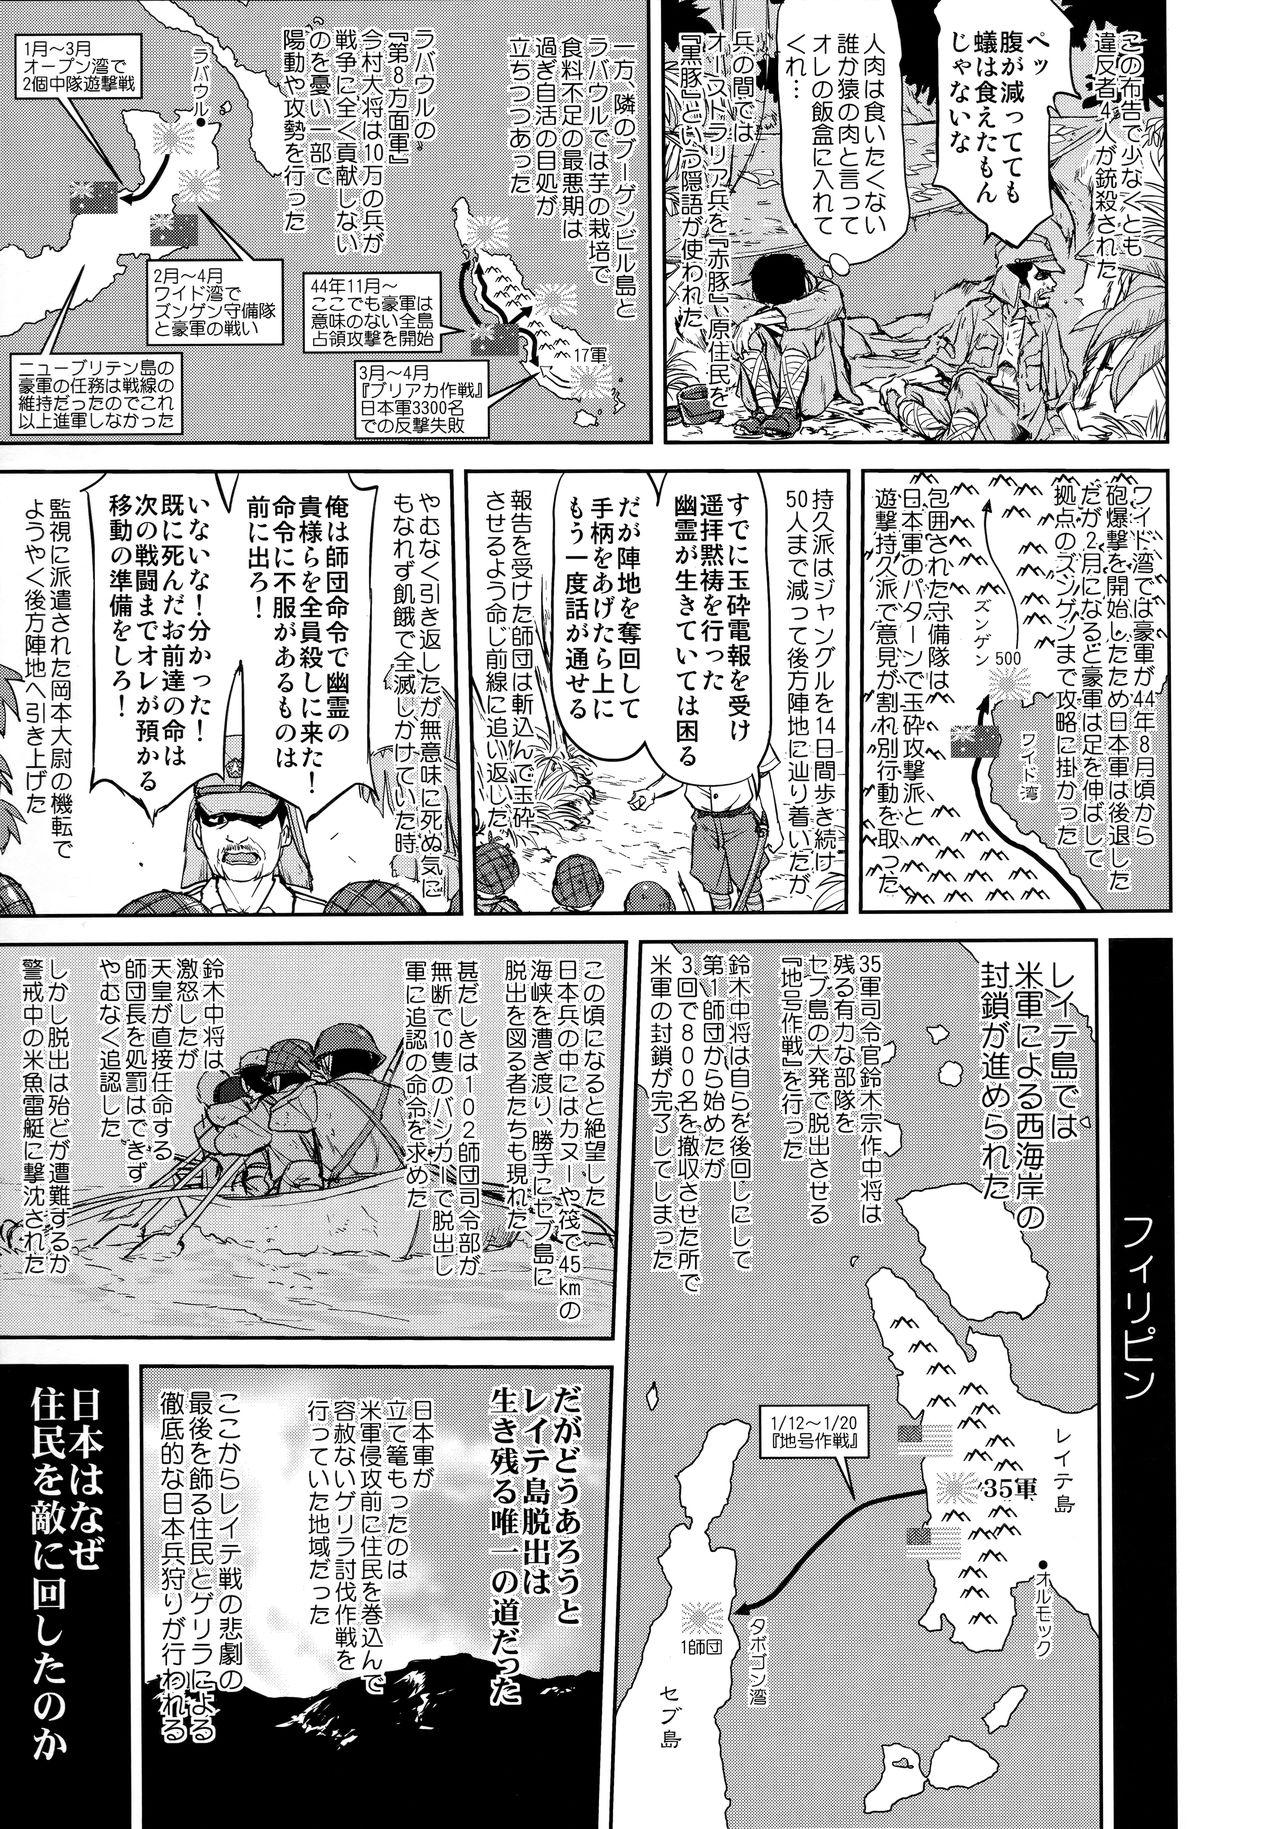 Twerking Teitoku no Ketsudan Kanmusu no Ichiban Nagai Hi - Kantai collection Clit - Page 10